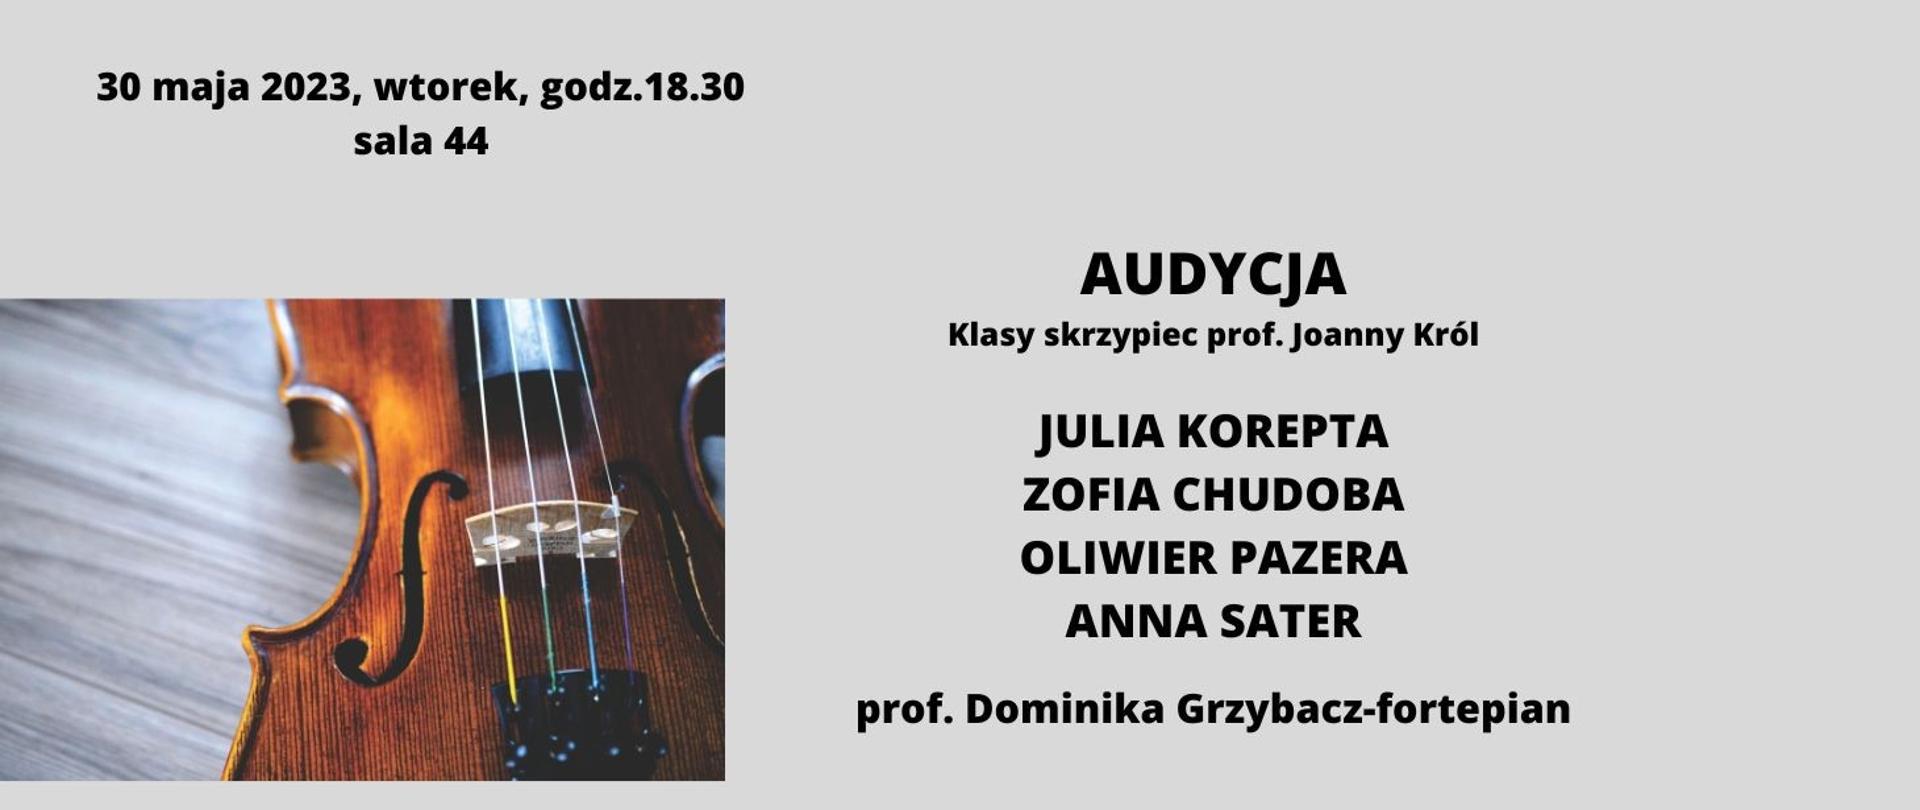 Audycja klasy skrzypiec prof.Joanna Król 30.05.2023 zdjęcie skrzypiec